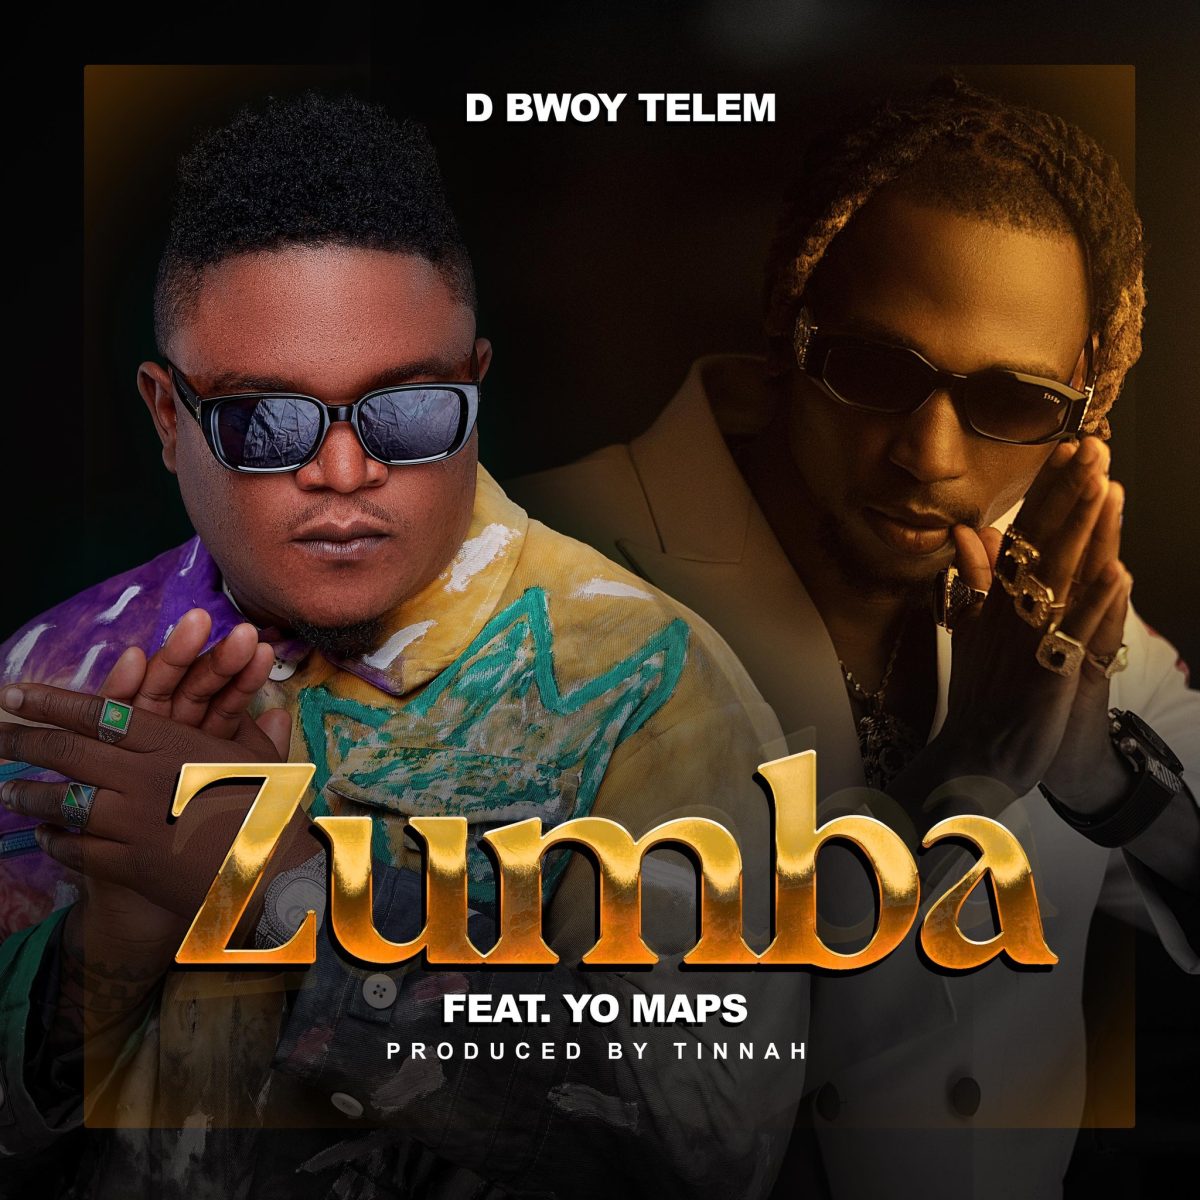 D Bwoy Telem ft. Yo Maps - Zumba